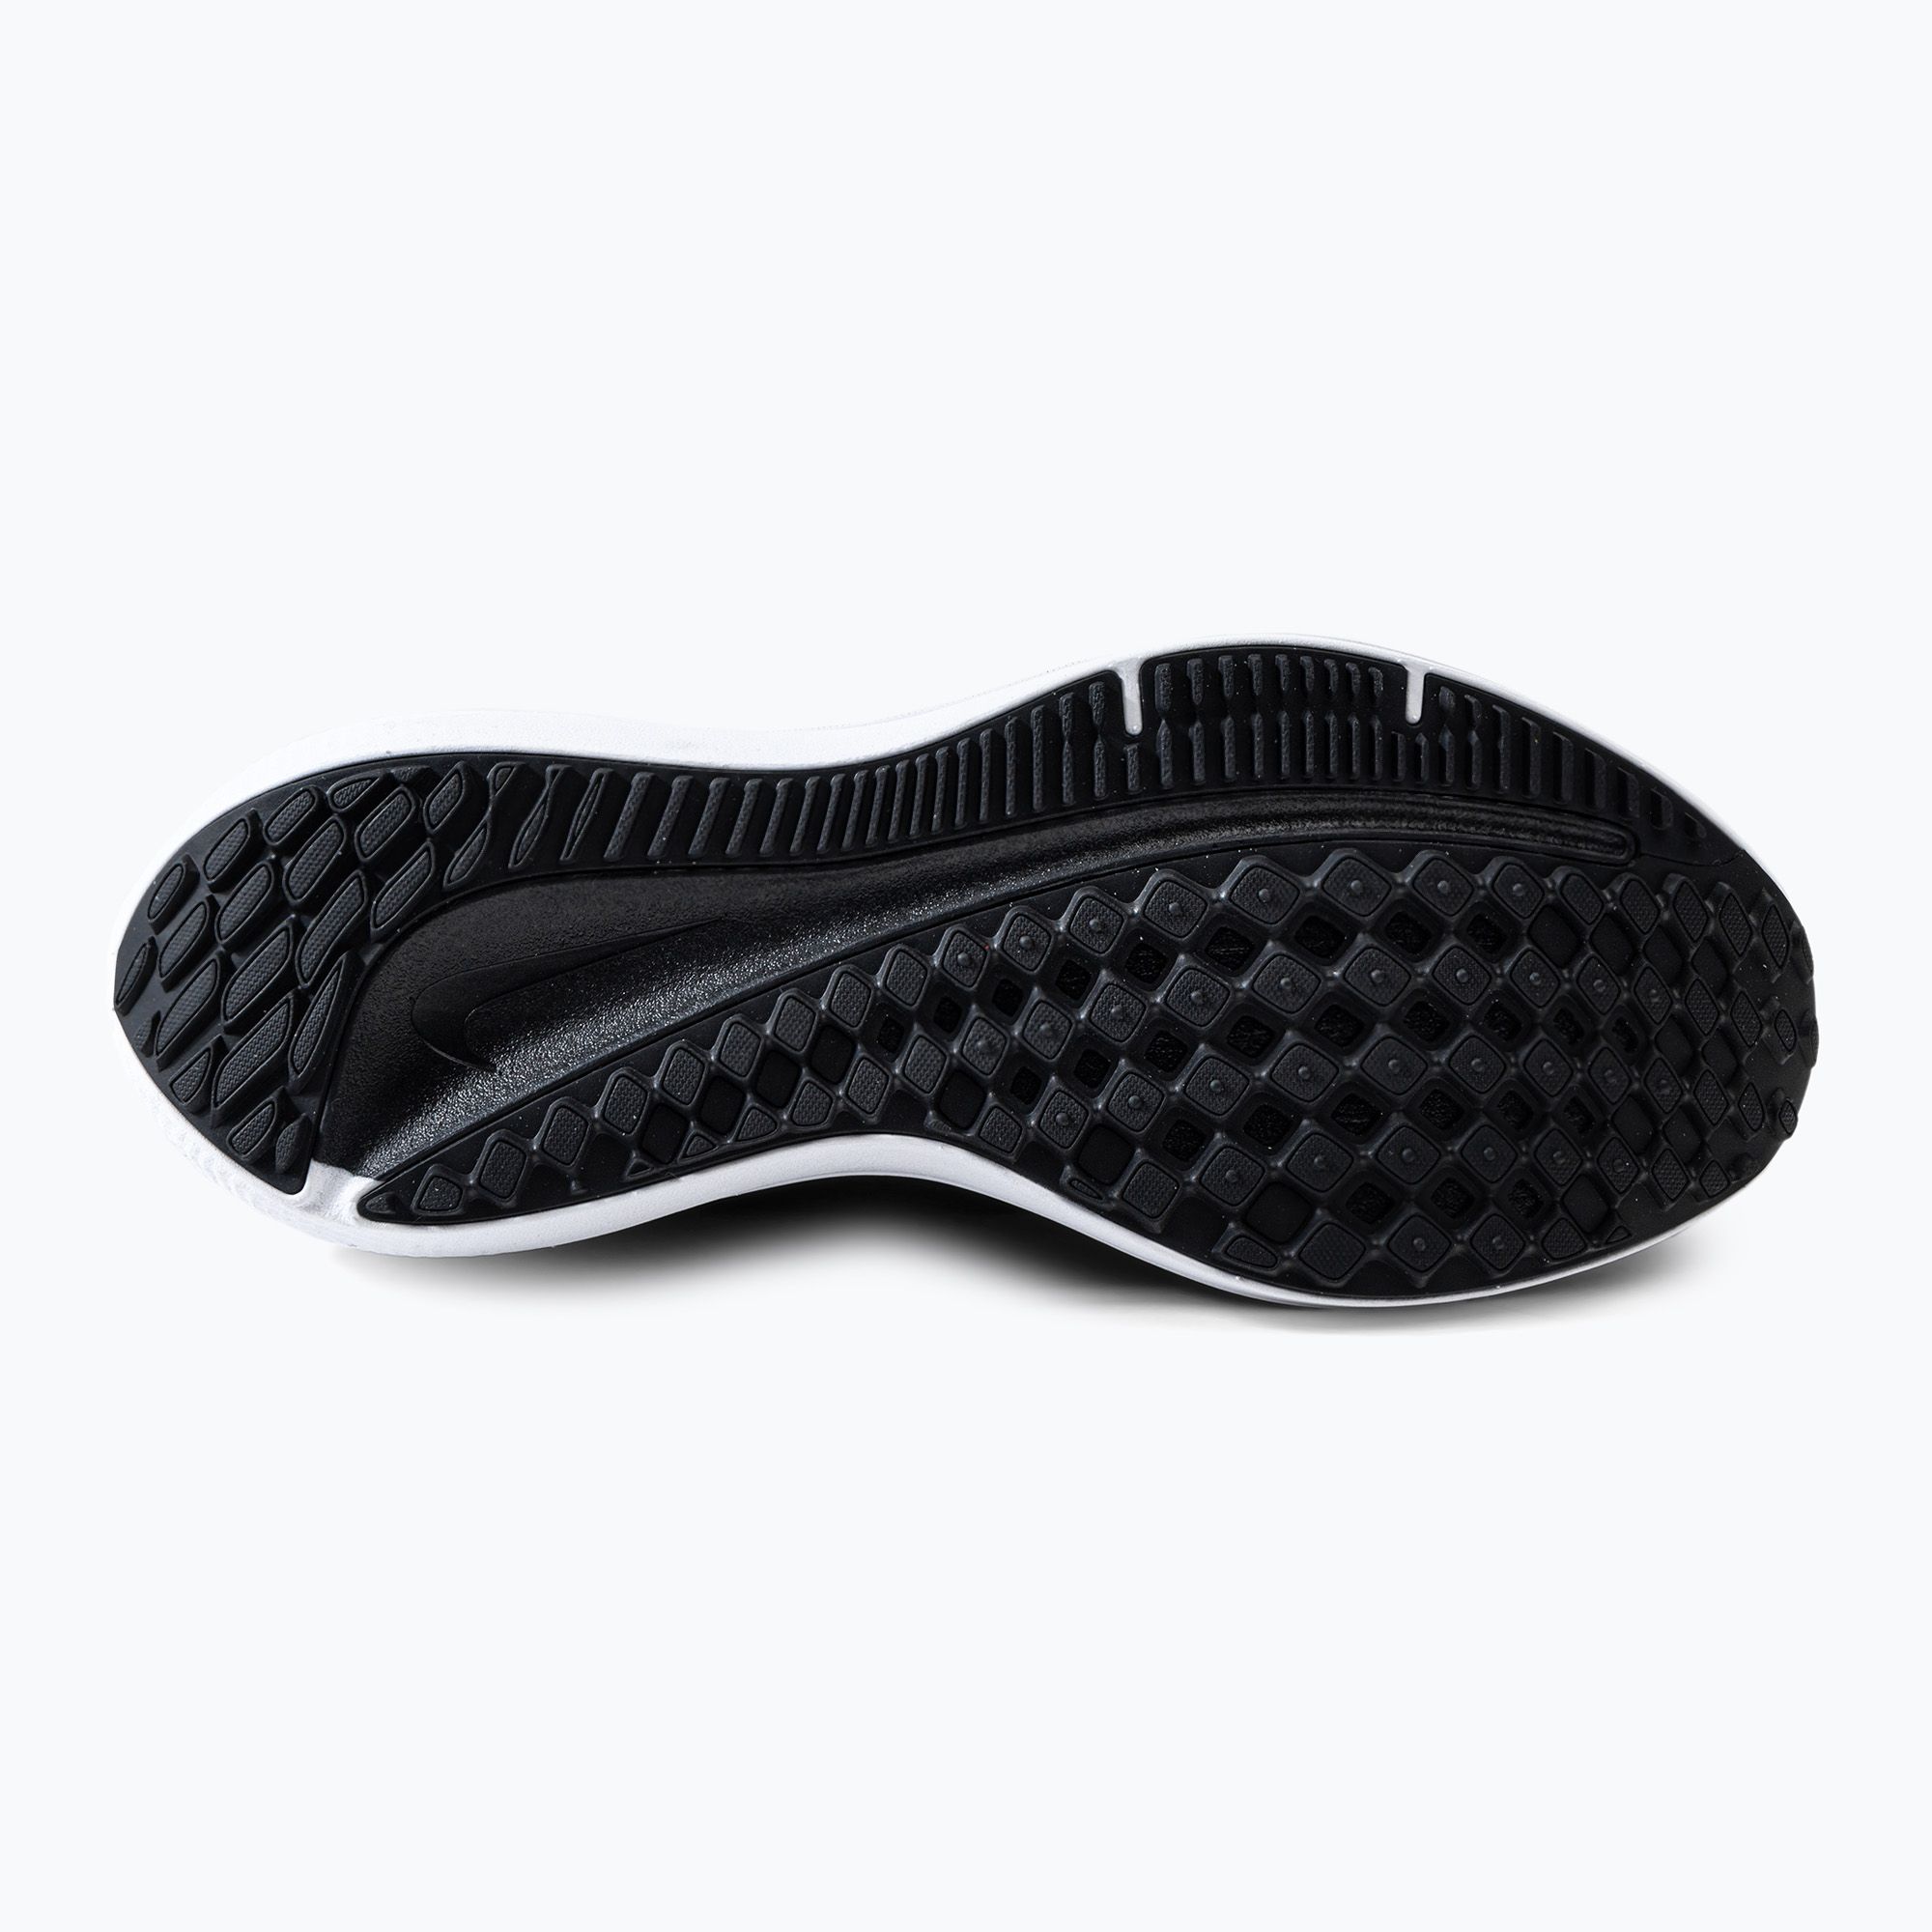 Buty do biegania męskie Nike Air Winflo 9 black/white/dark smoke grey zdjęcie nr 4